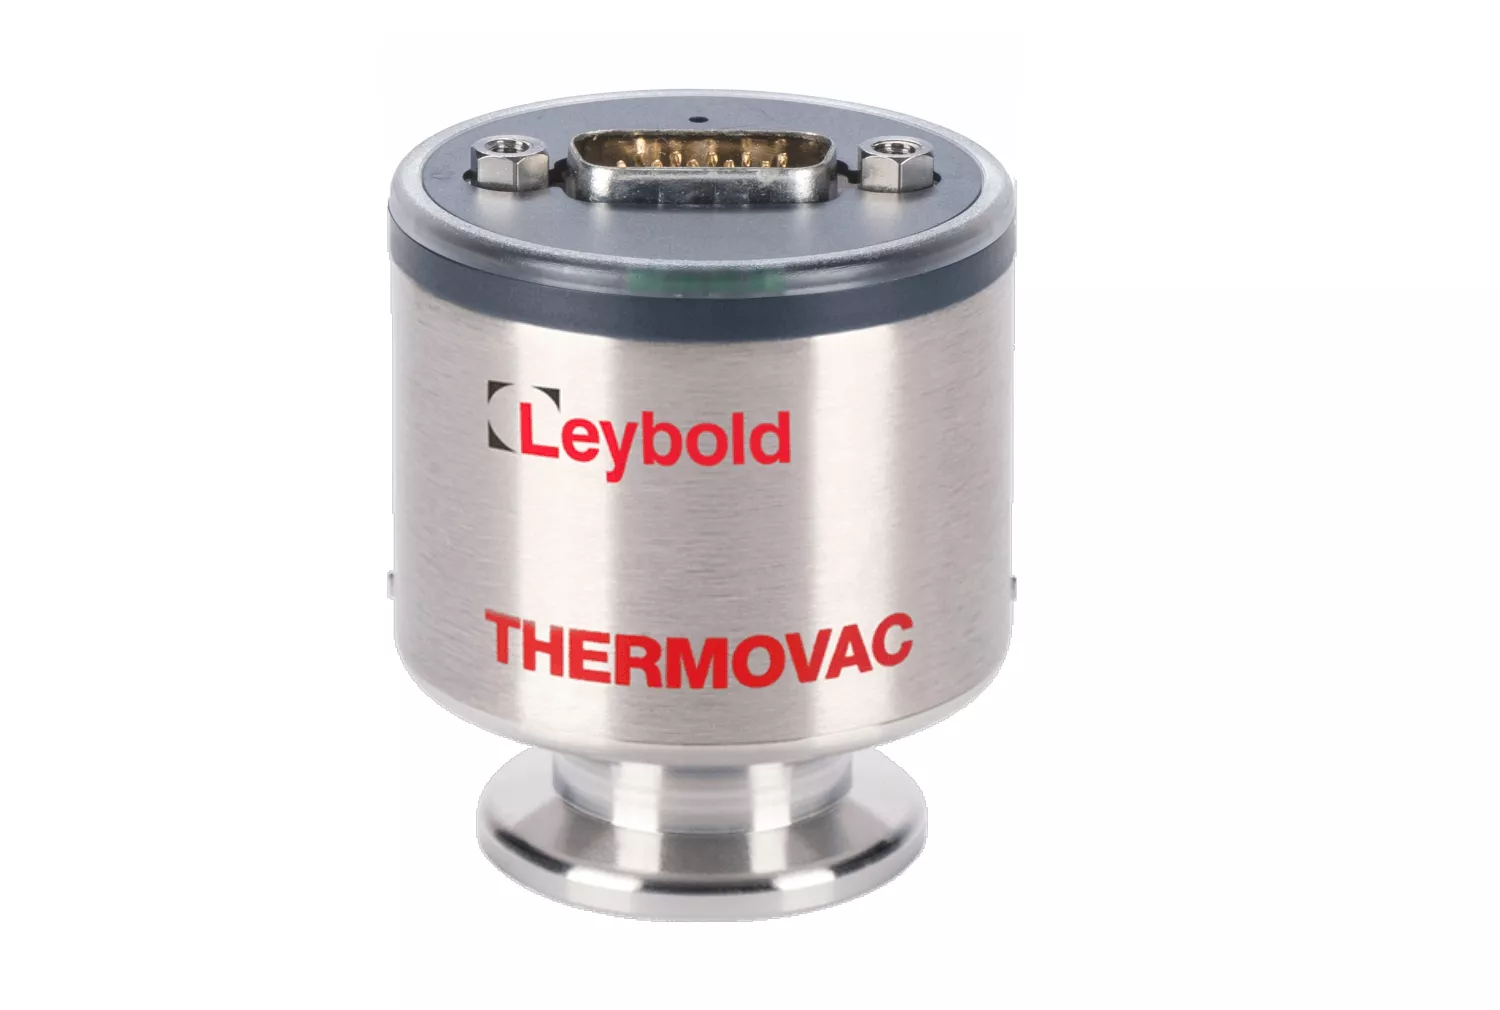 Купить в АО Вакууммаш ✓ Активный датчик THERMOVAC TTR 200 N Leybold по цене производителя